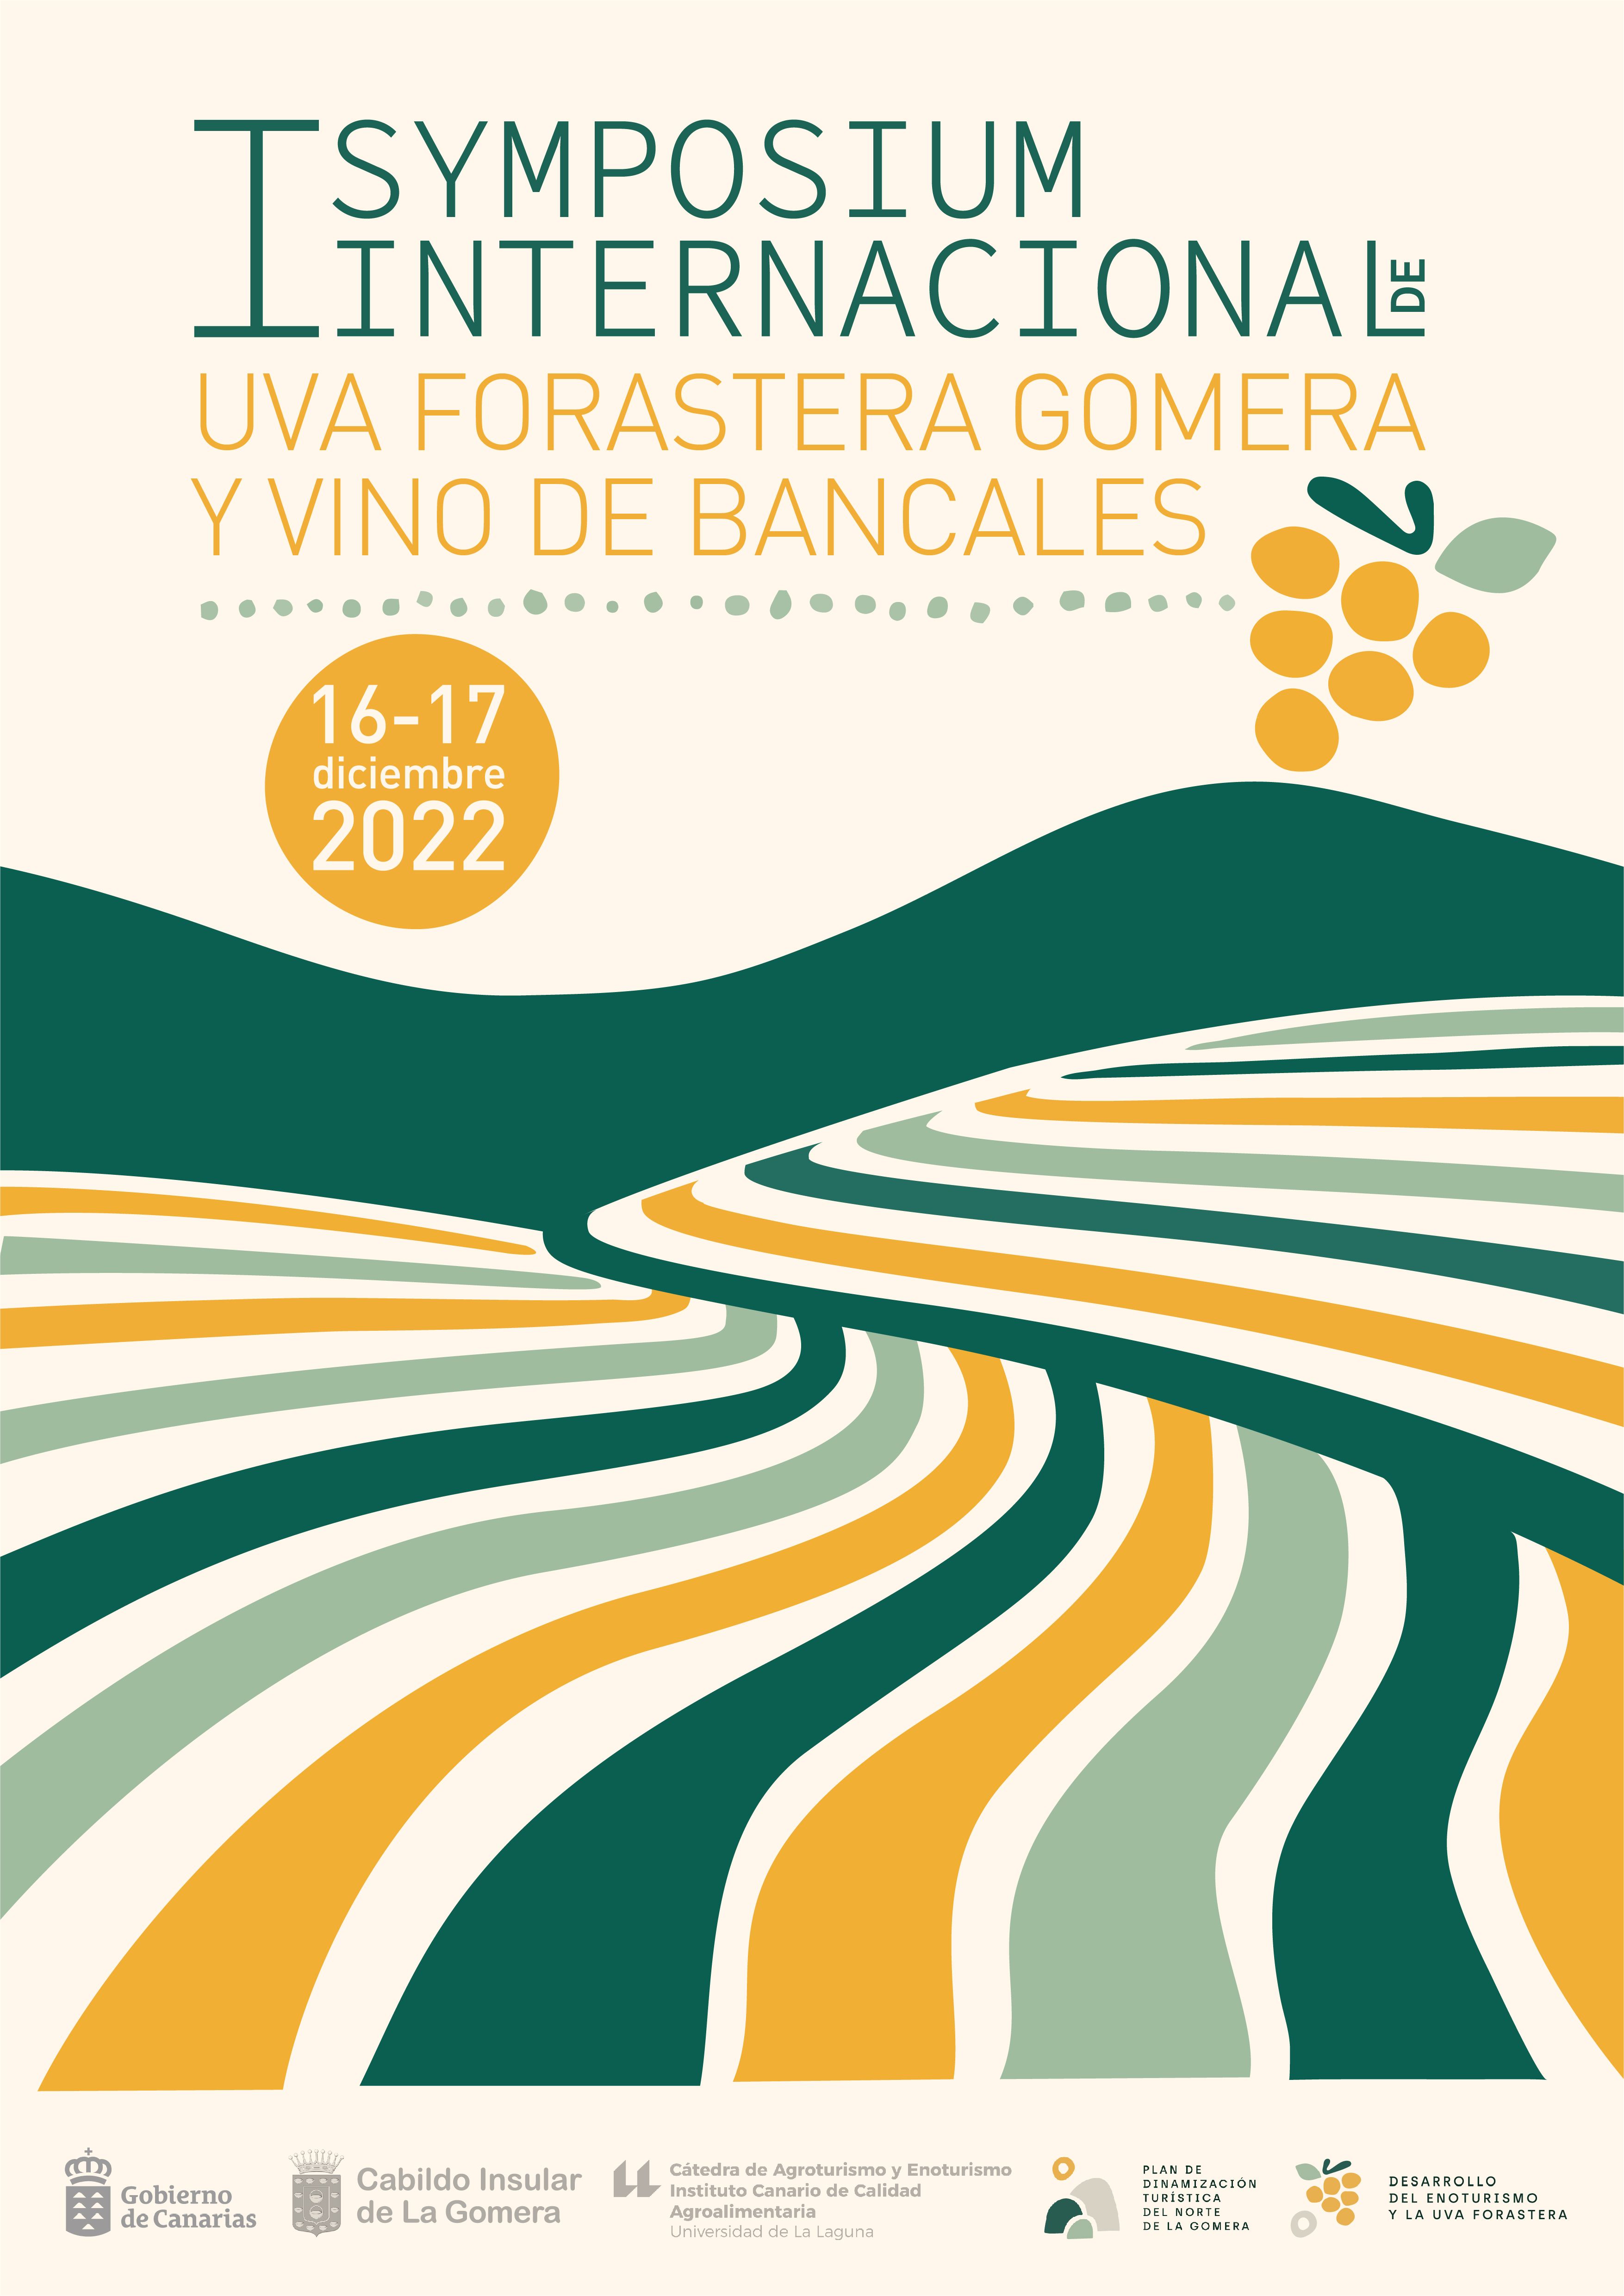 Turismo pone en marcha el I Symposium Internacional de Uva Forastera Gomera y Vino de Bancales